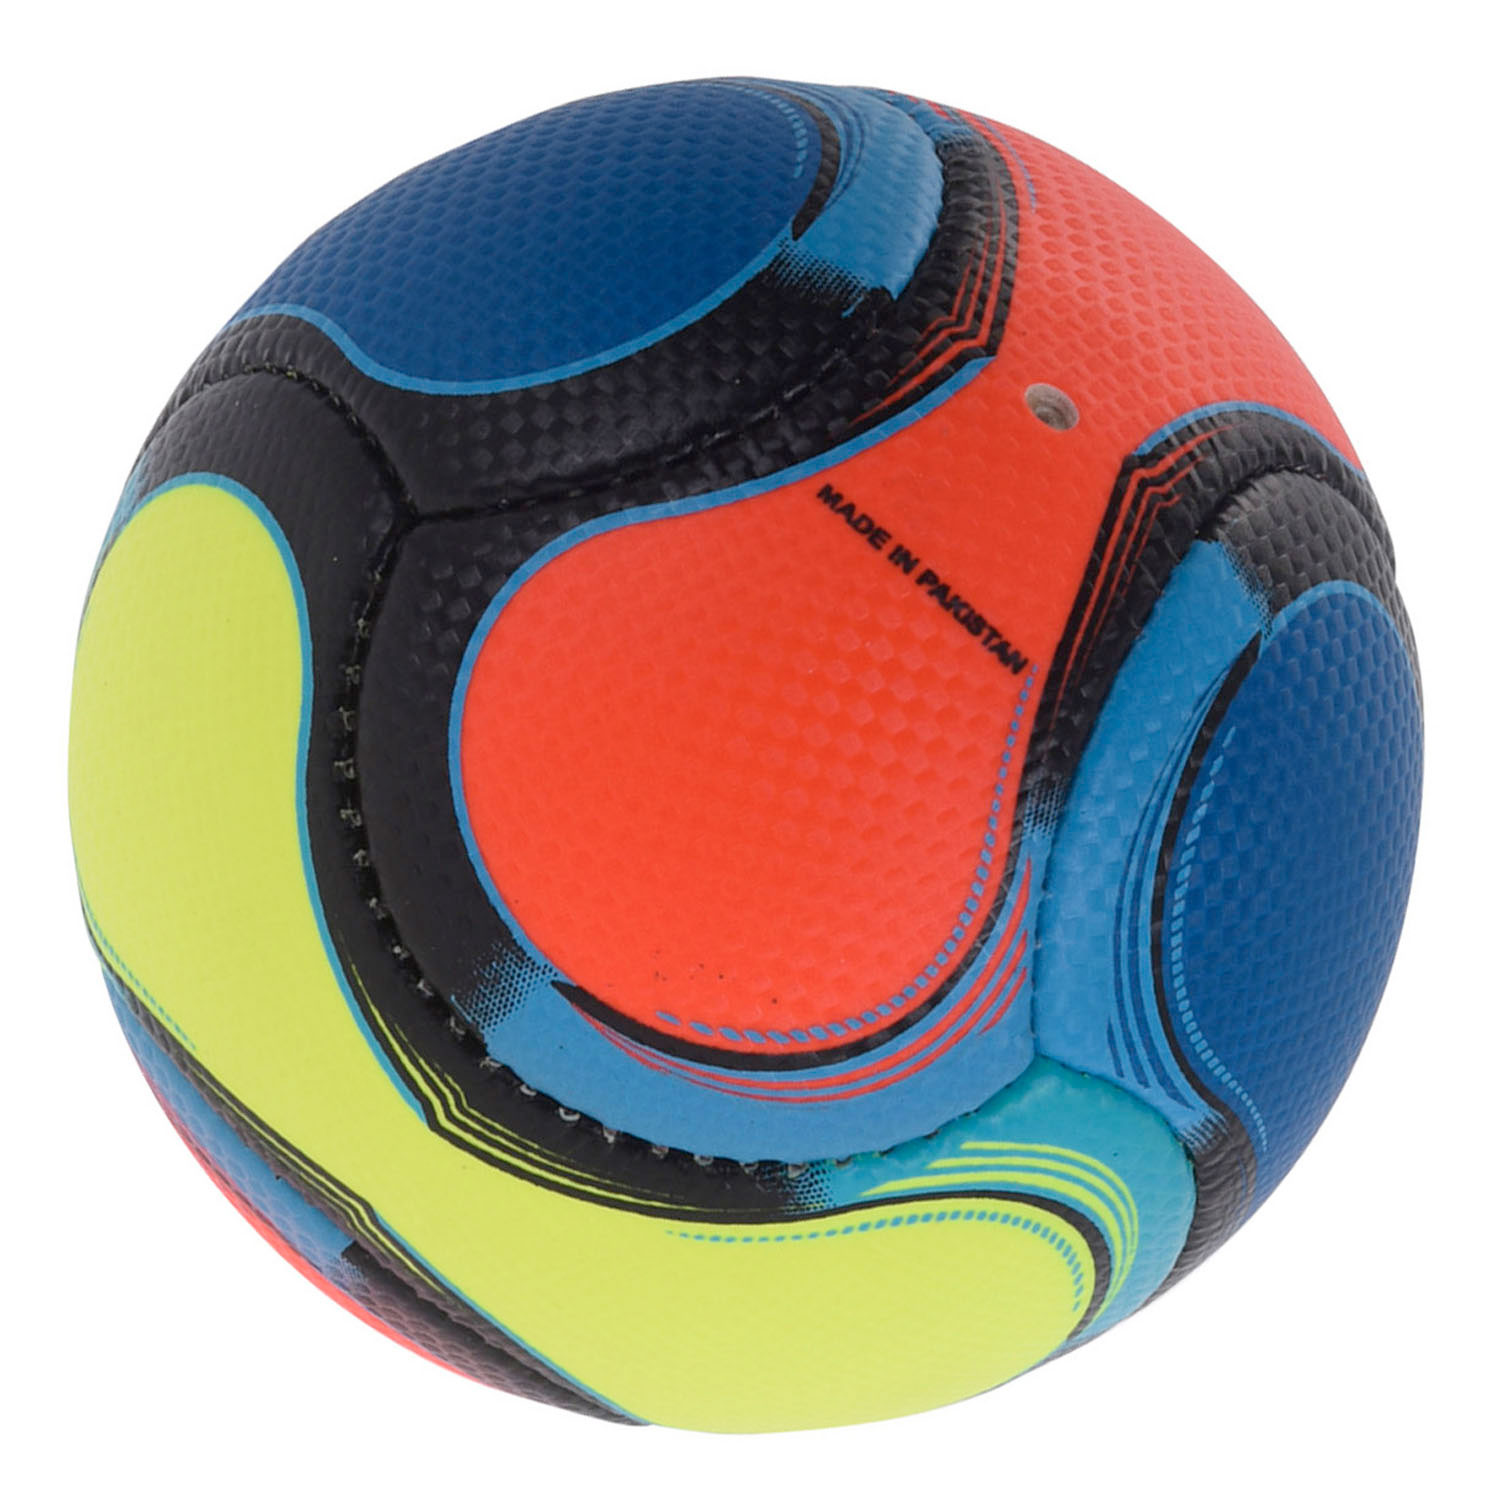 Mini-Fußball, 15 cm.